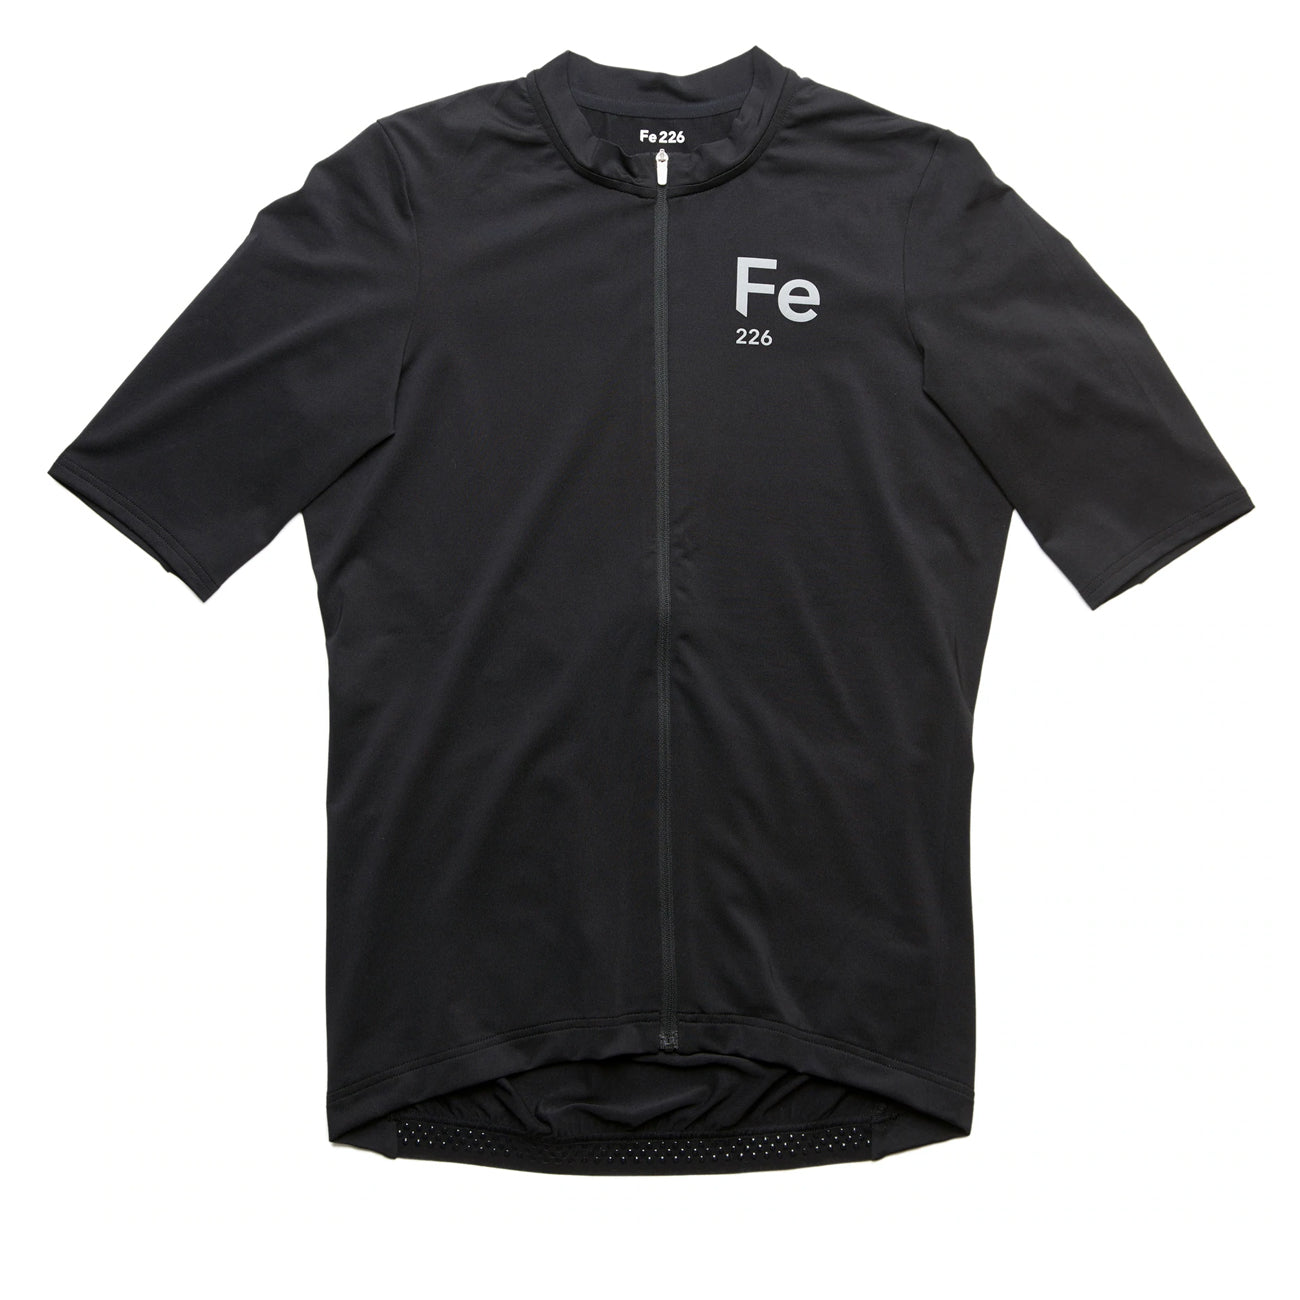 Fe226 StrongRide Bike Jersey Short Sleeves Herren Black